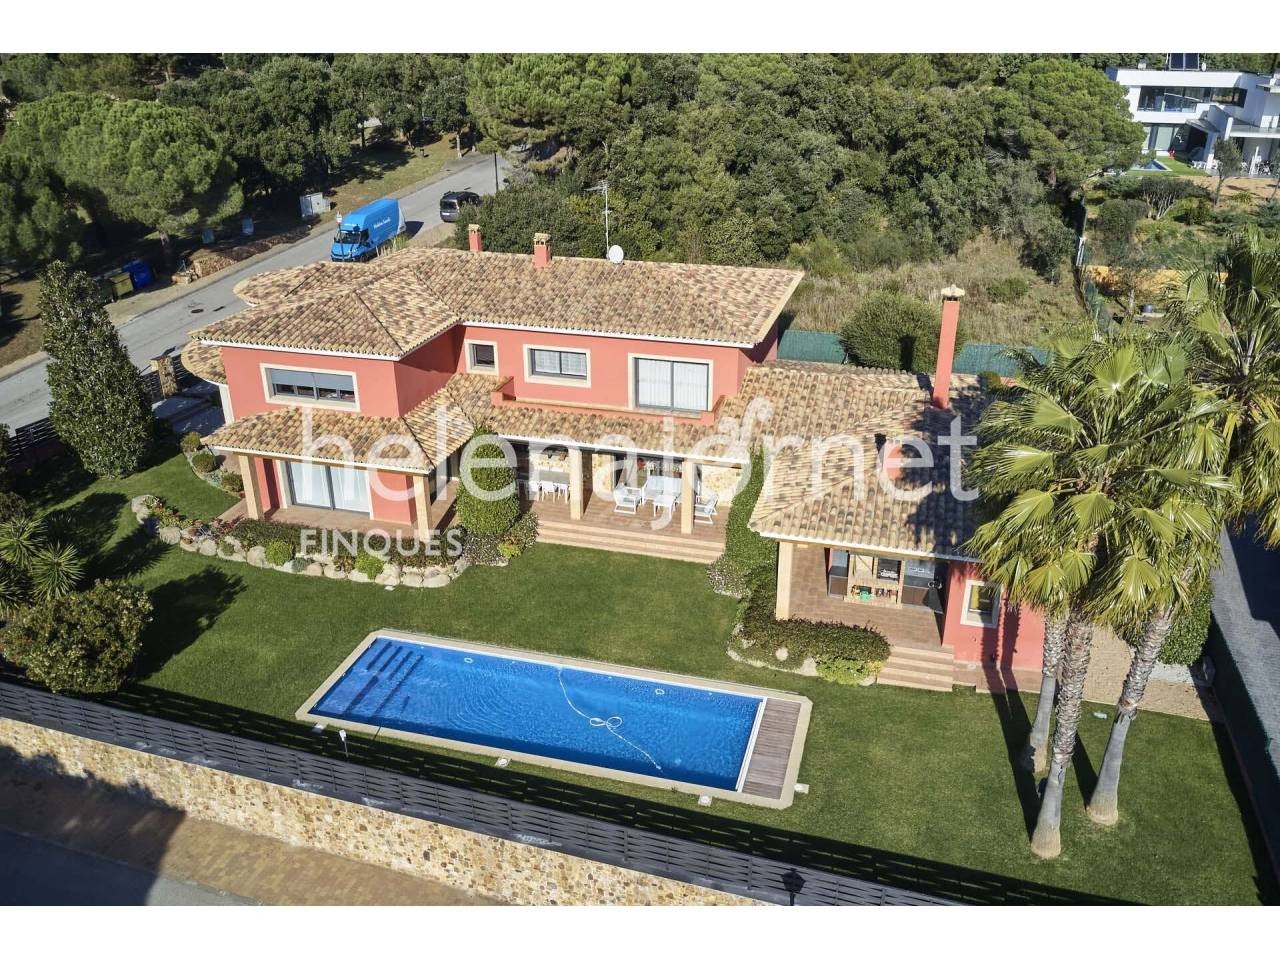 Fantástica y luminosa casa con jardín y piscina en Santa Cristina d'Aro - 3516